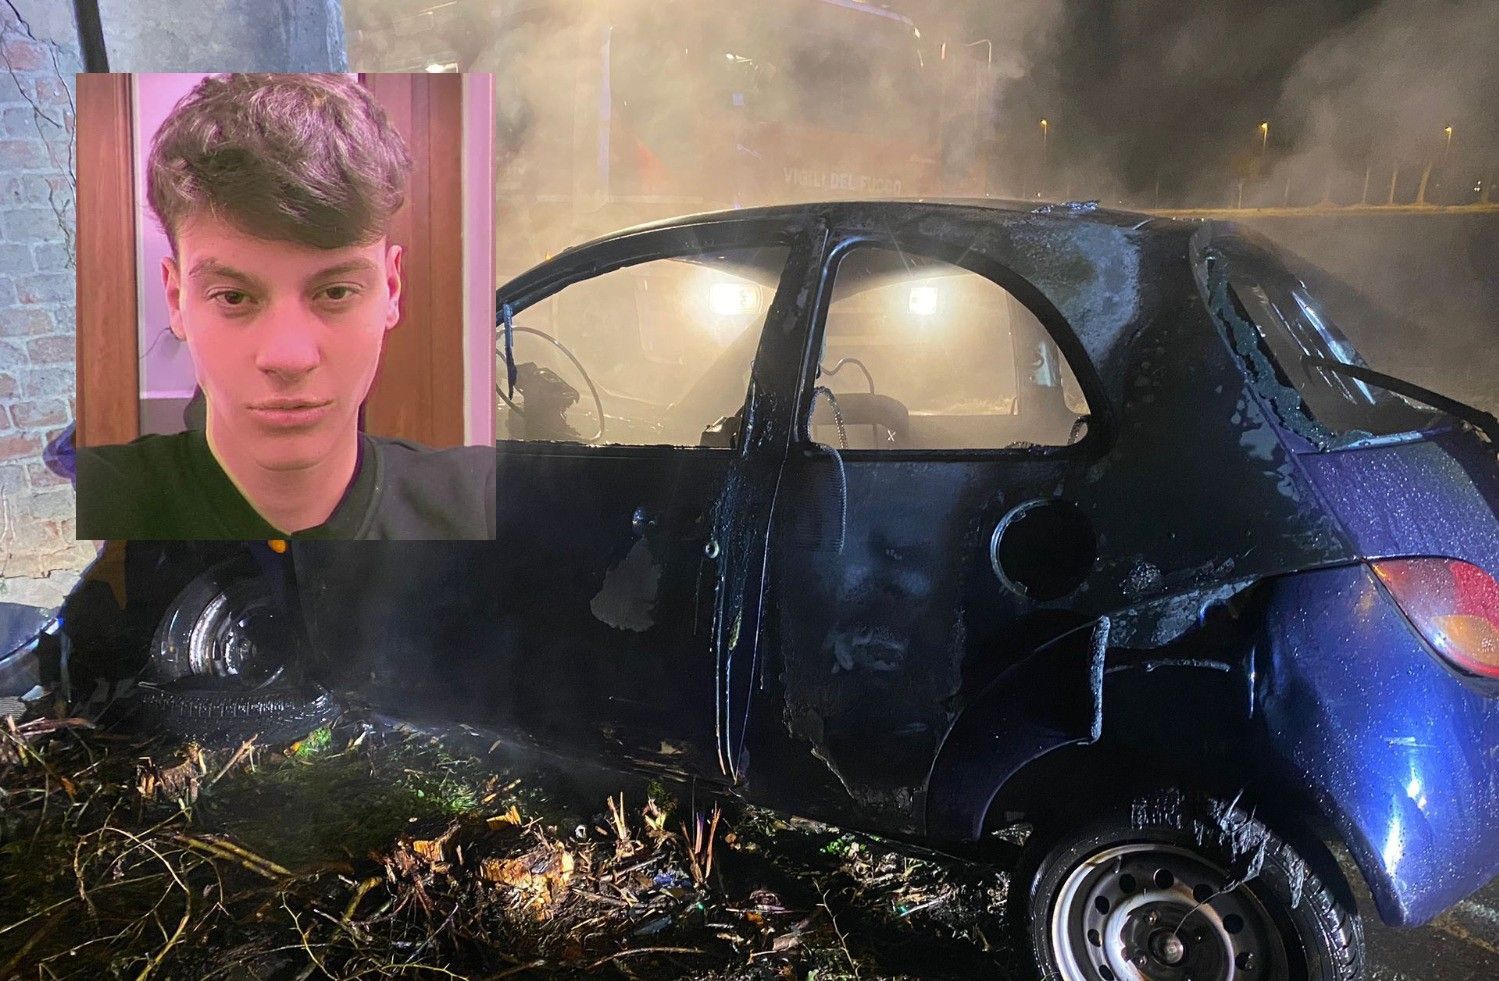 Festa që përfundoi në tragjedi/ Zbulohet identiteti i 18-vjeçarit, që u karbonizua brenda makinës në Itali